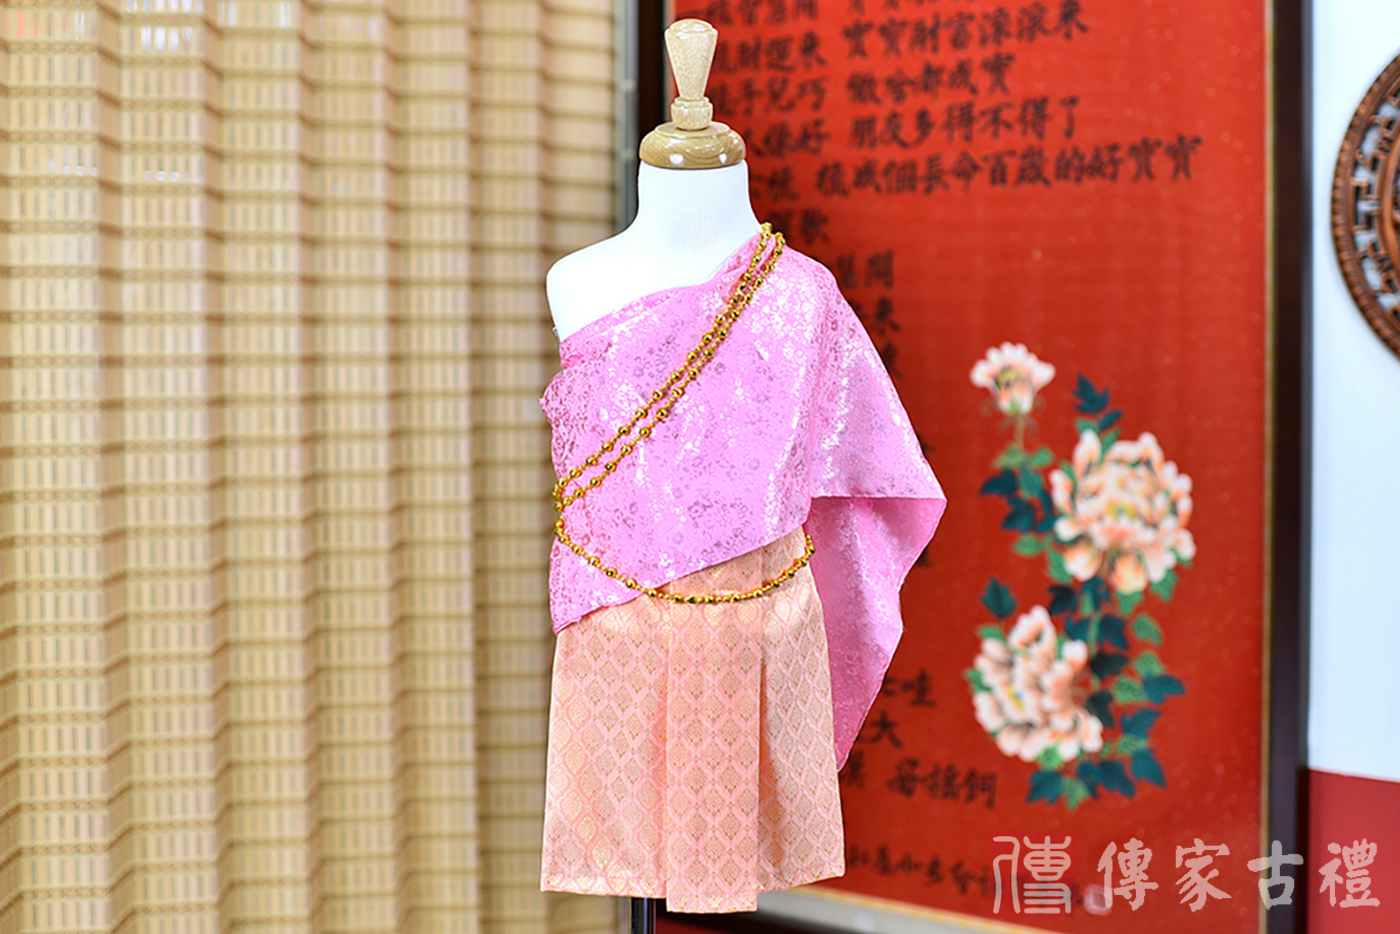 2024-02-23小孩皇室泰服古裝禮服。淺紫色的紋路披肩上衣搭配橘色紋路格狀裙裝的泰式古裝禮服。照片集